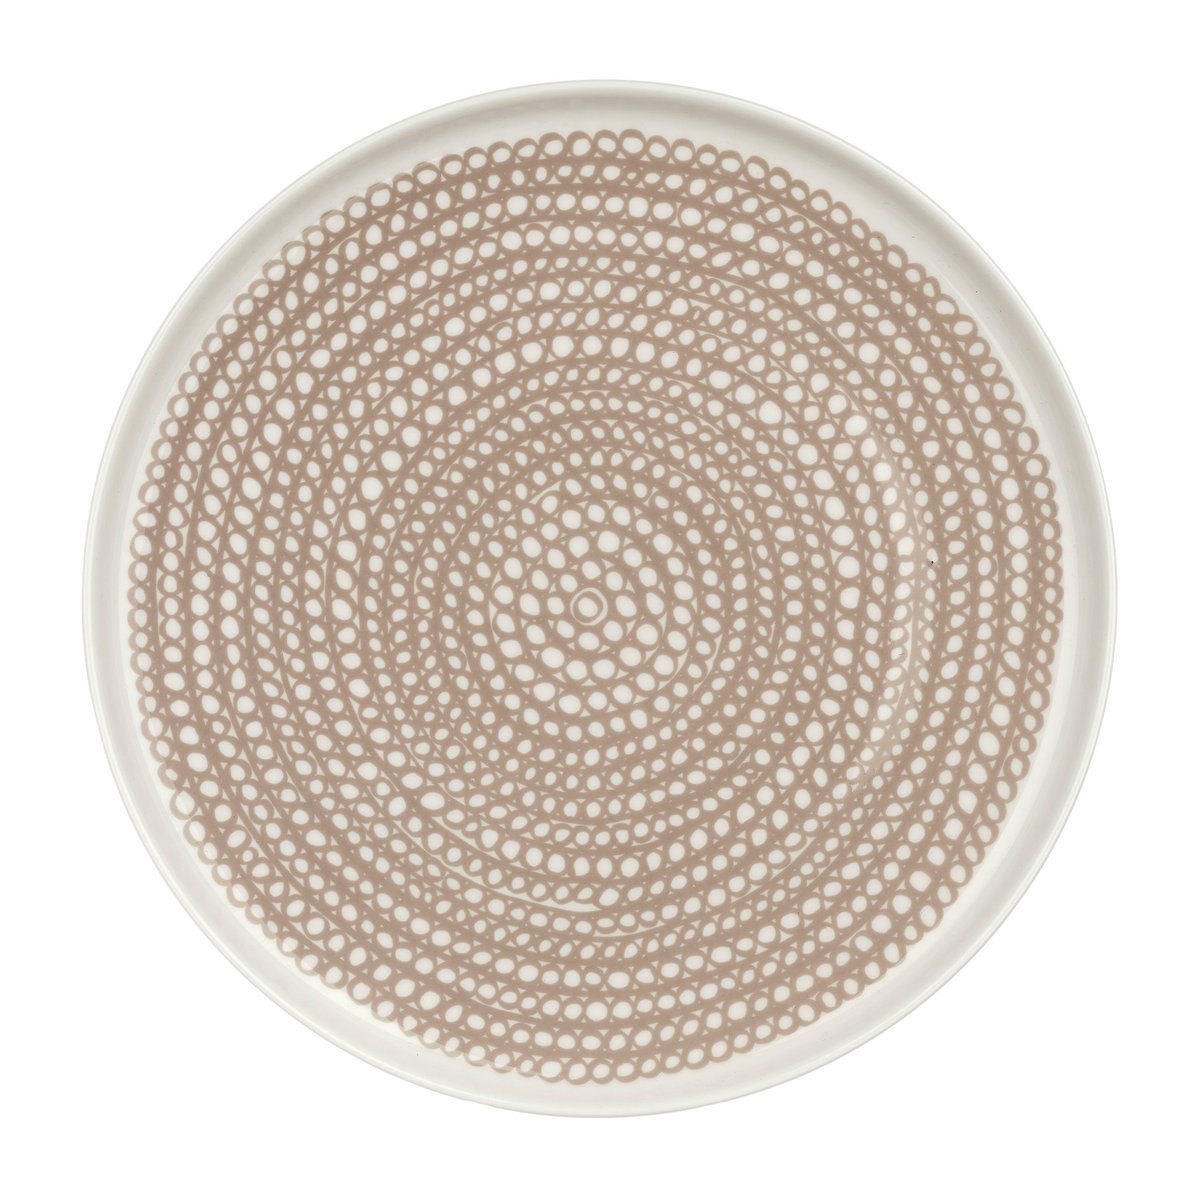 Marimekko Siirtolapuutarha tallerken lille Ø20 cm White-clay